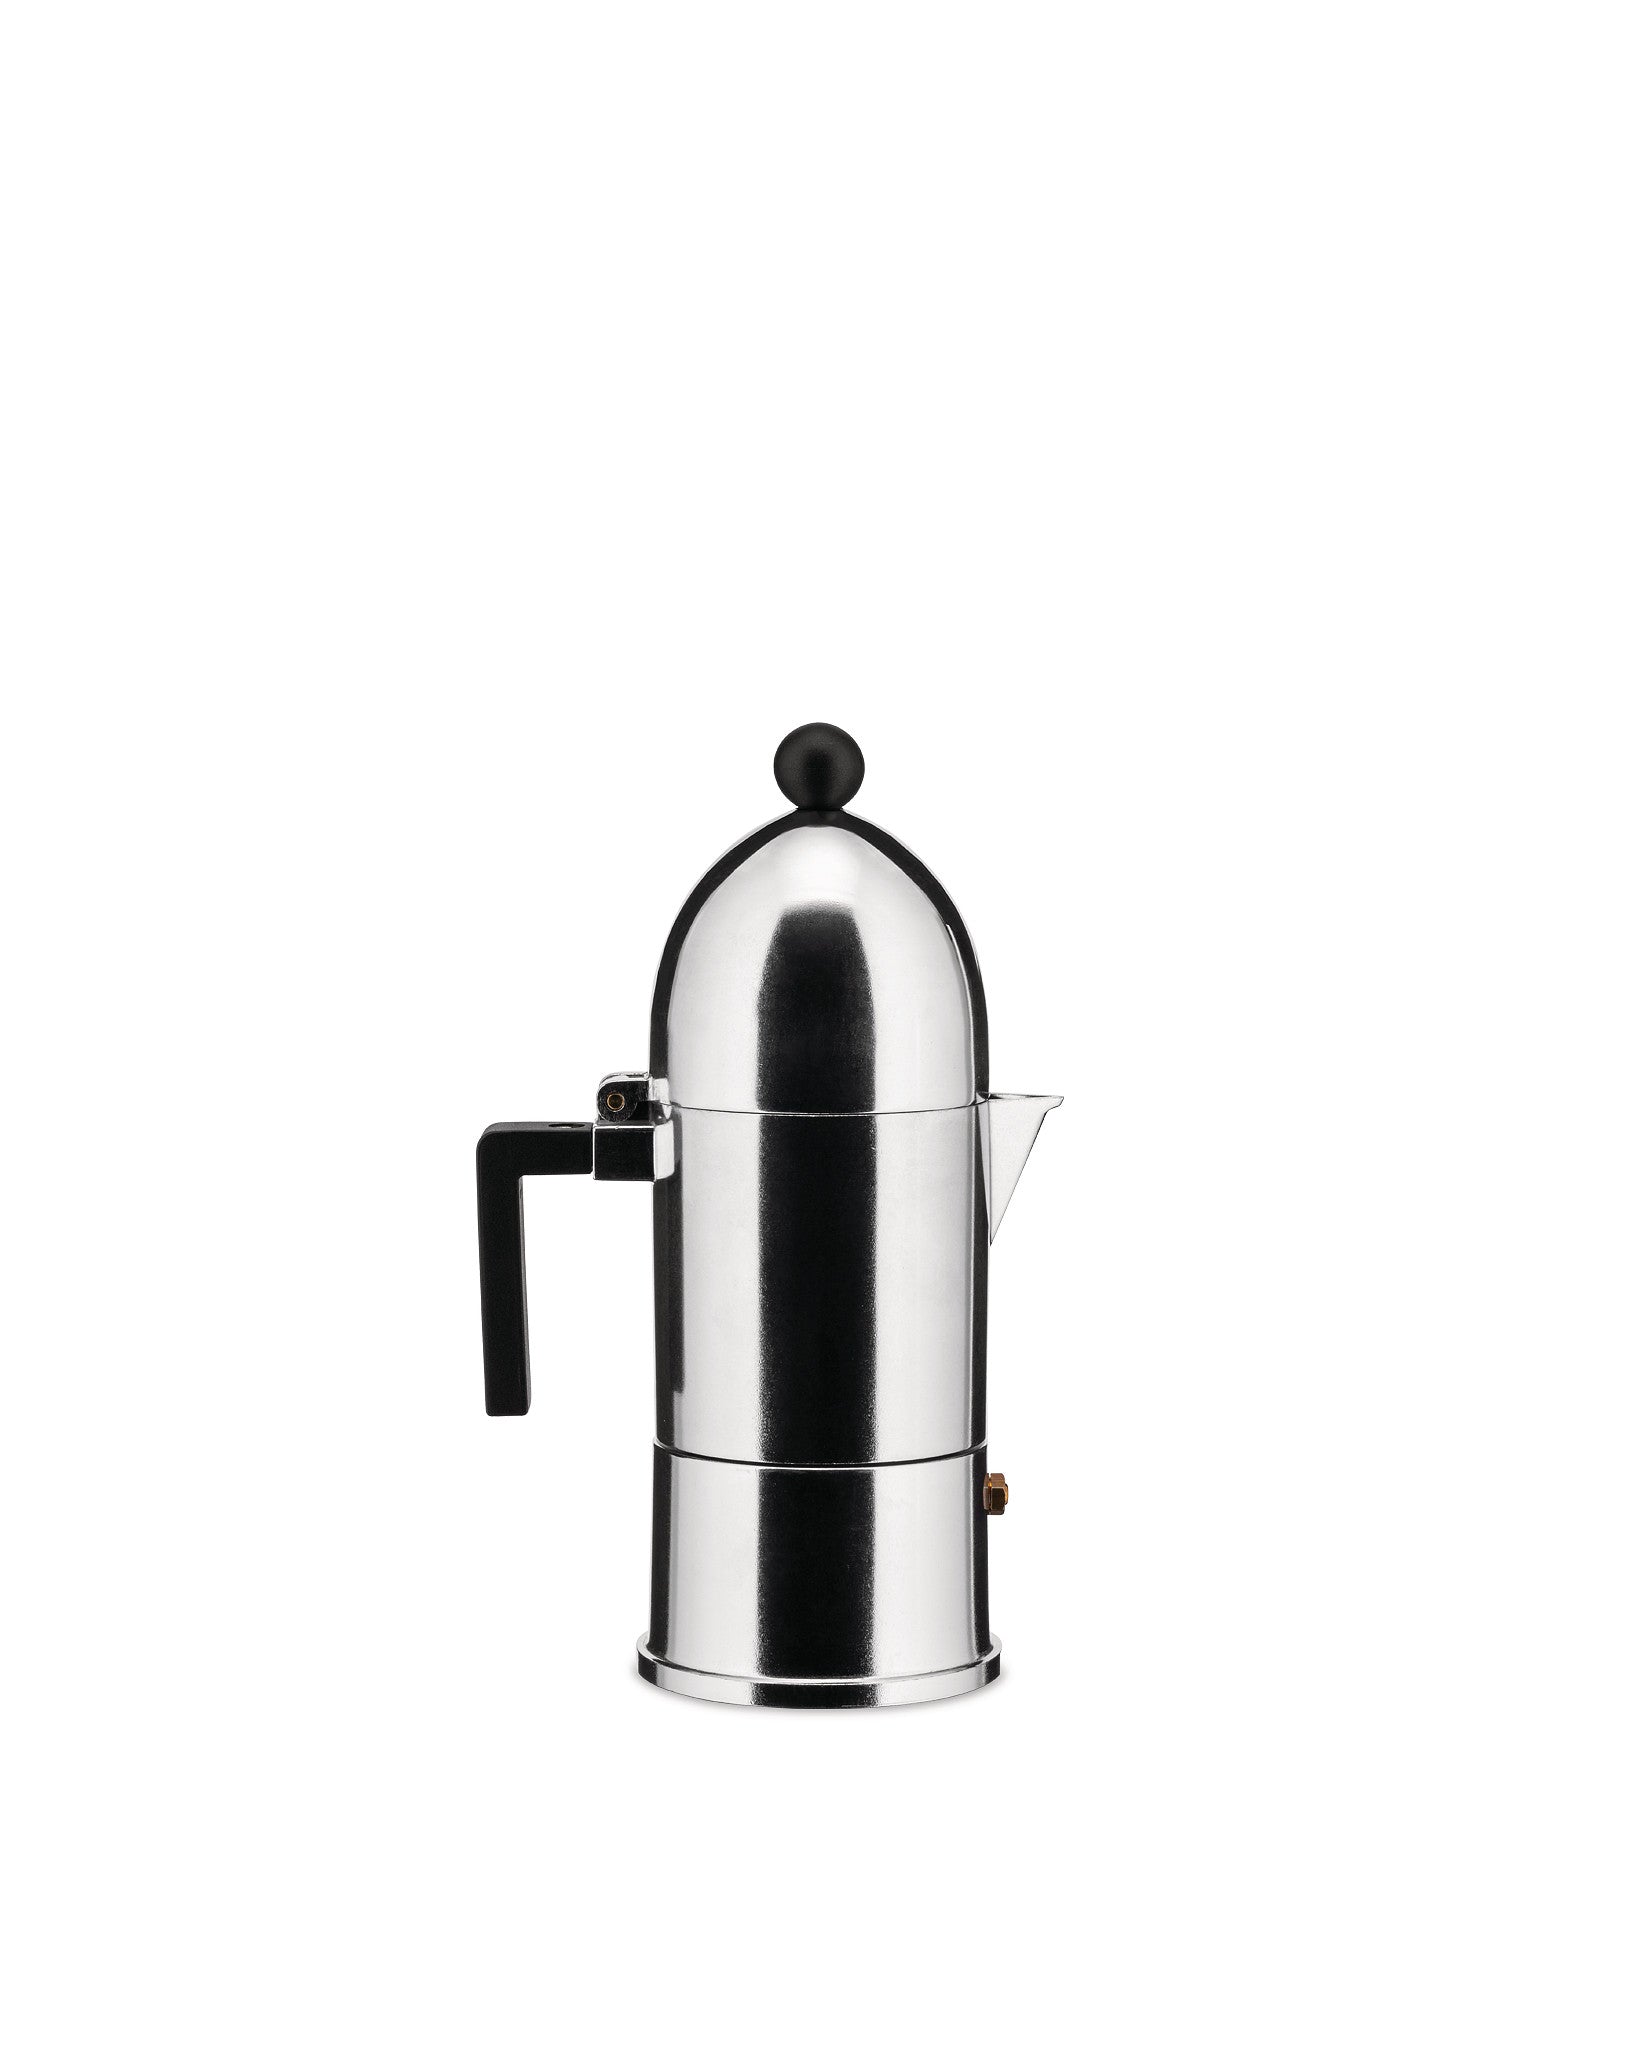 La cupola ESPRESSO COFFEE MAKER, entworfen von Aldo Rossi für Alessi. Diese Caffettiera ist ein italienischer Design-Klassiker, der auf der originalen Moka-Kanne für die Zubereitung von Espresso basiert. Zeitgenössisch und unverwechselbar mit seiner Kuppel und dem kugelförmigen Körper aus poliertem Aluminium